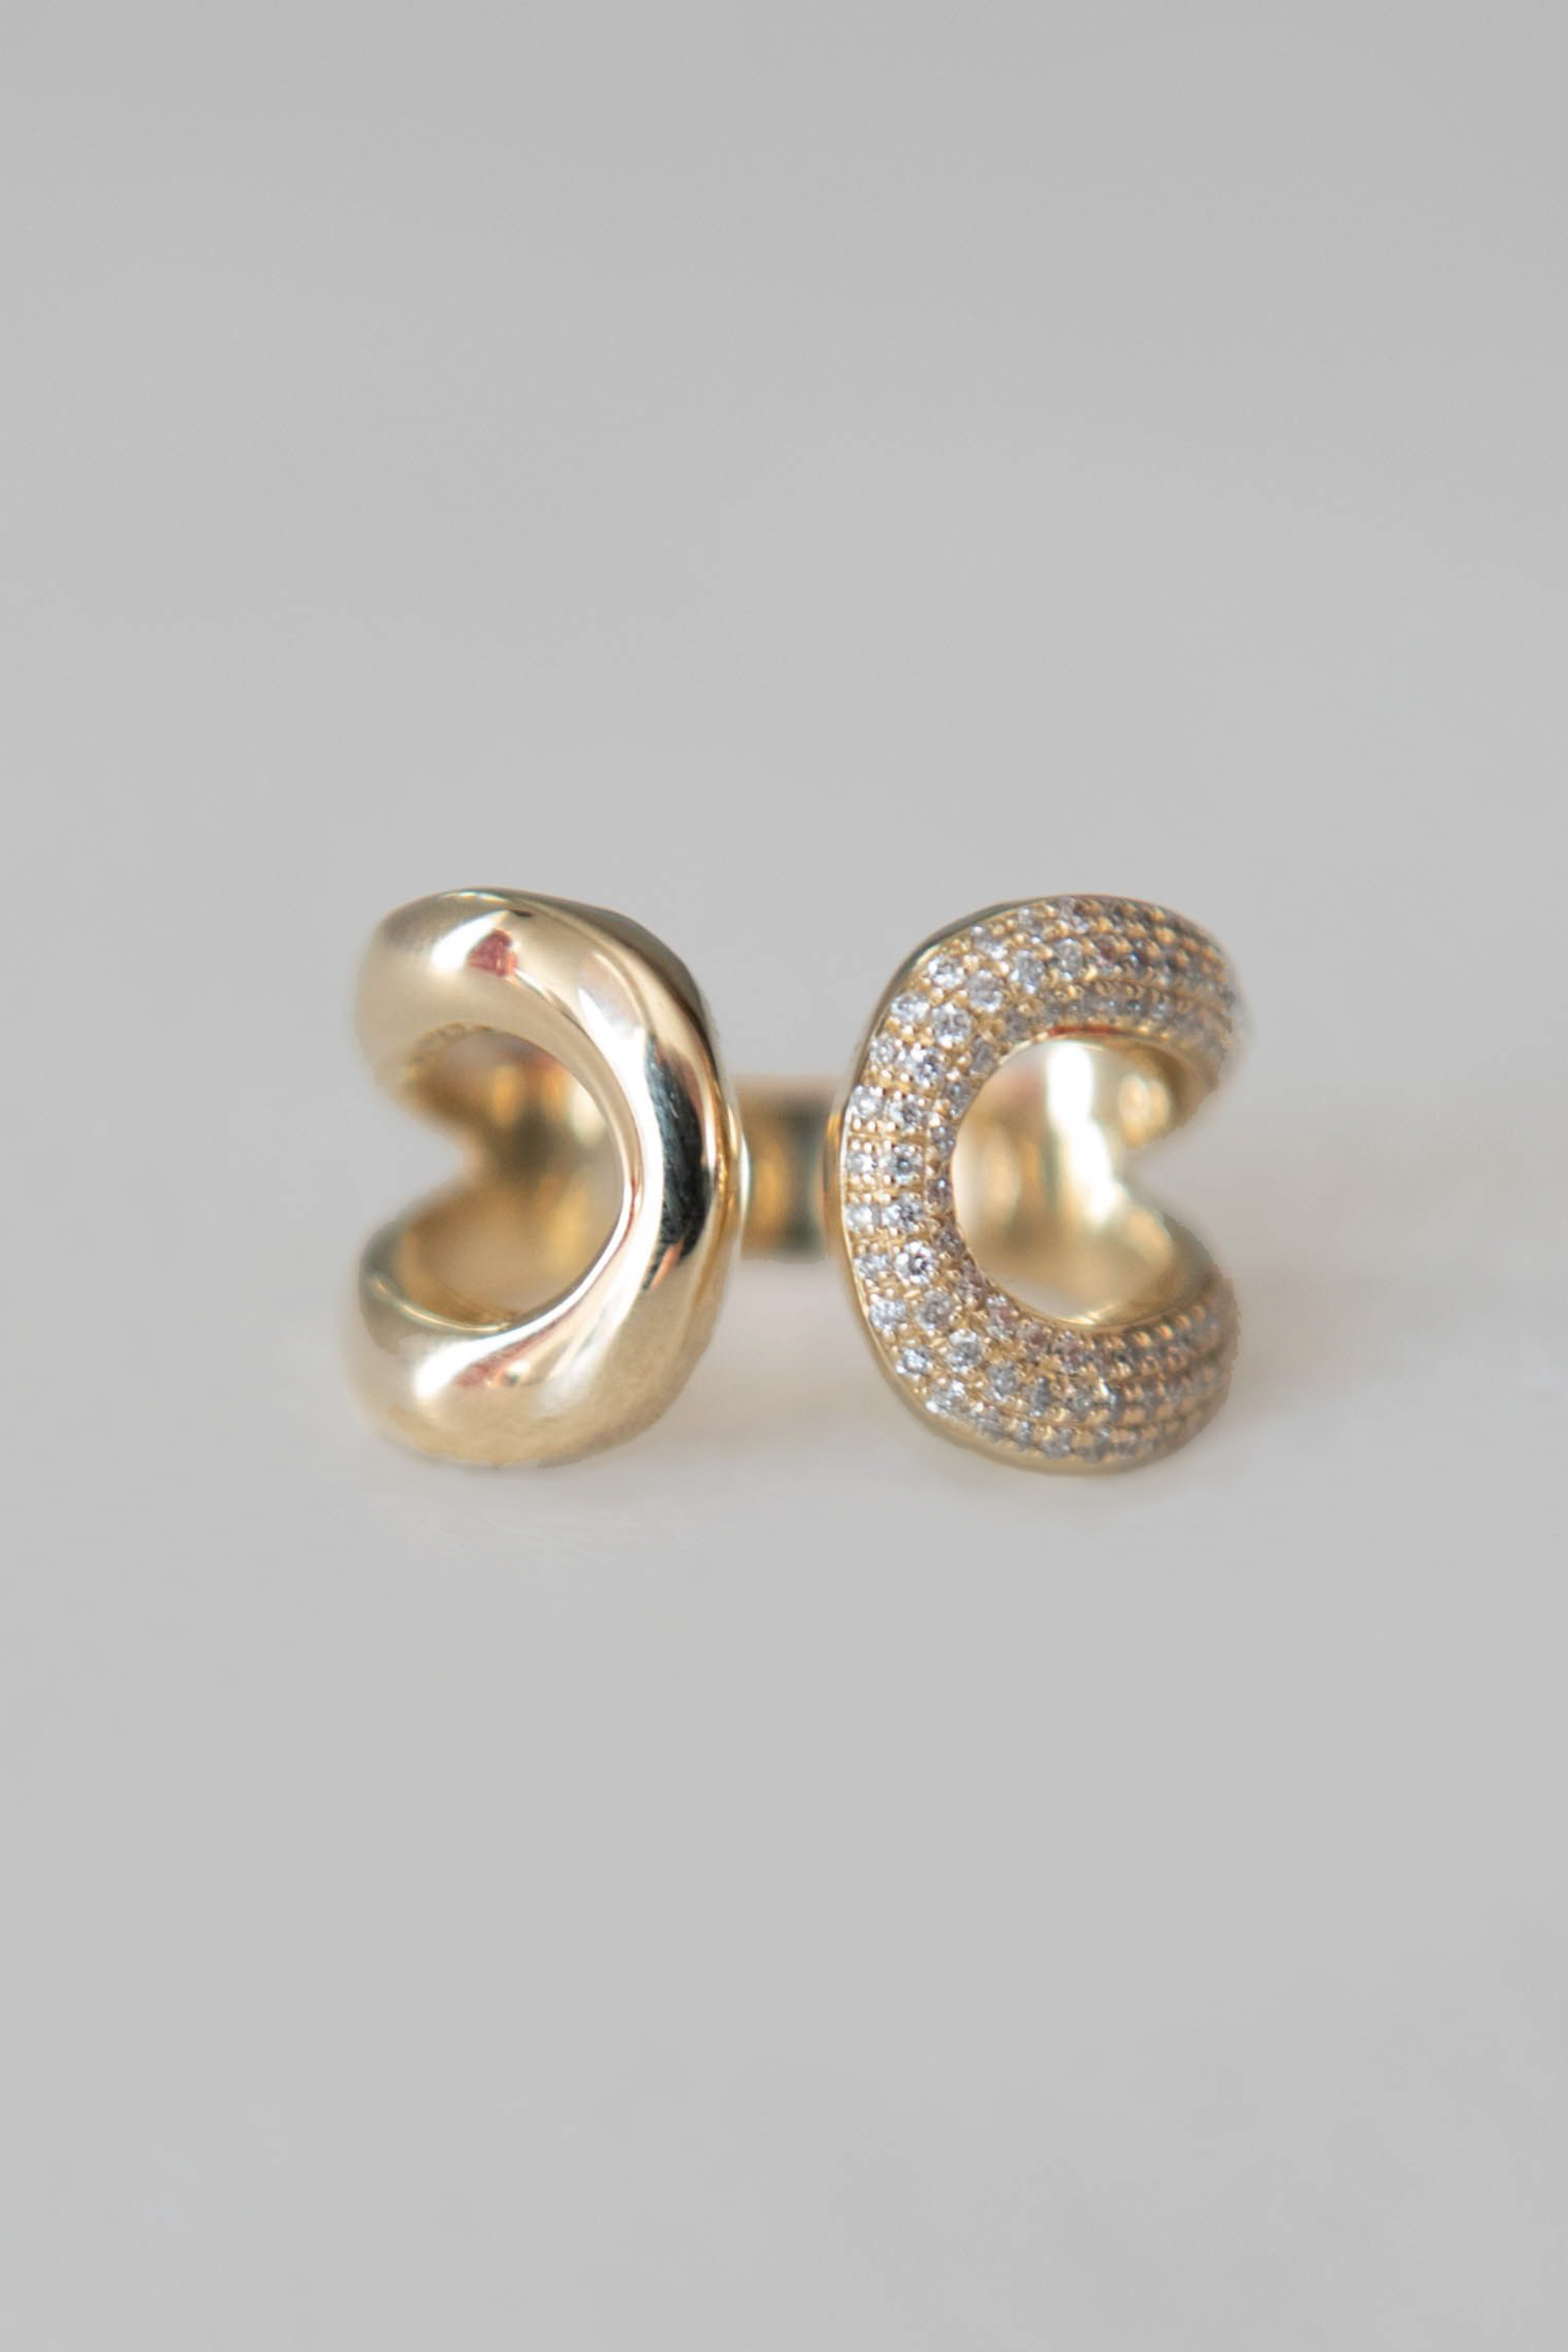 925 Sterling Silver Earring Fashion Wide Side Hollow oval Ear Ring Big  Earring OL Temperament Metal Style Woman Girl Ear Jewelry - AliExpress